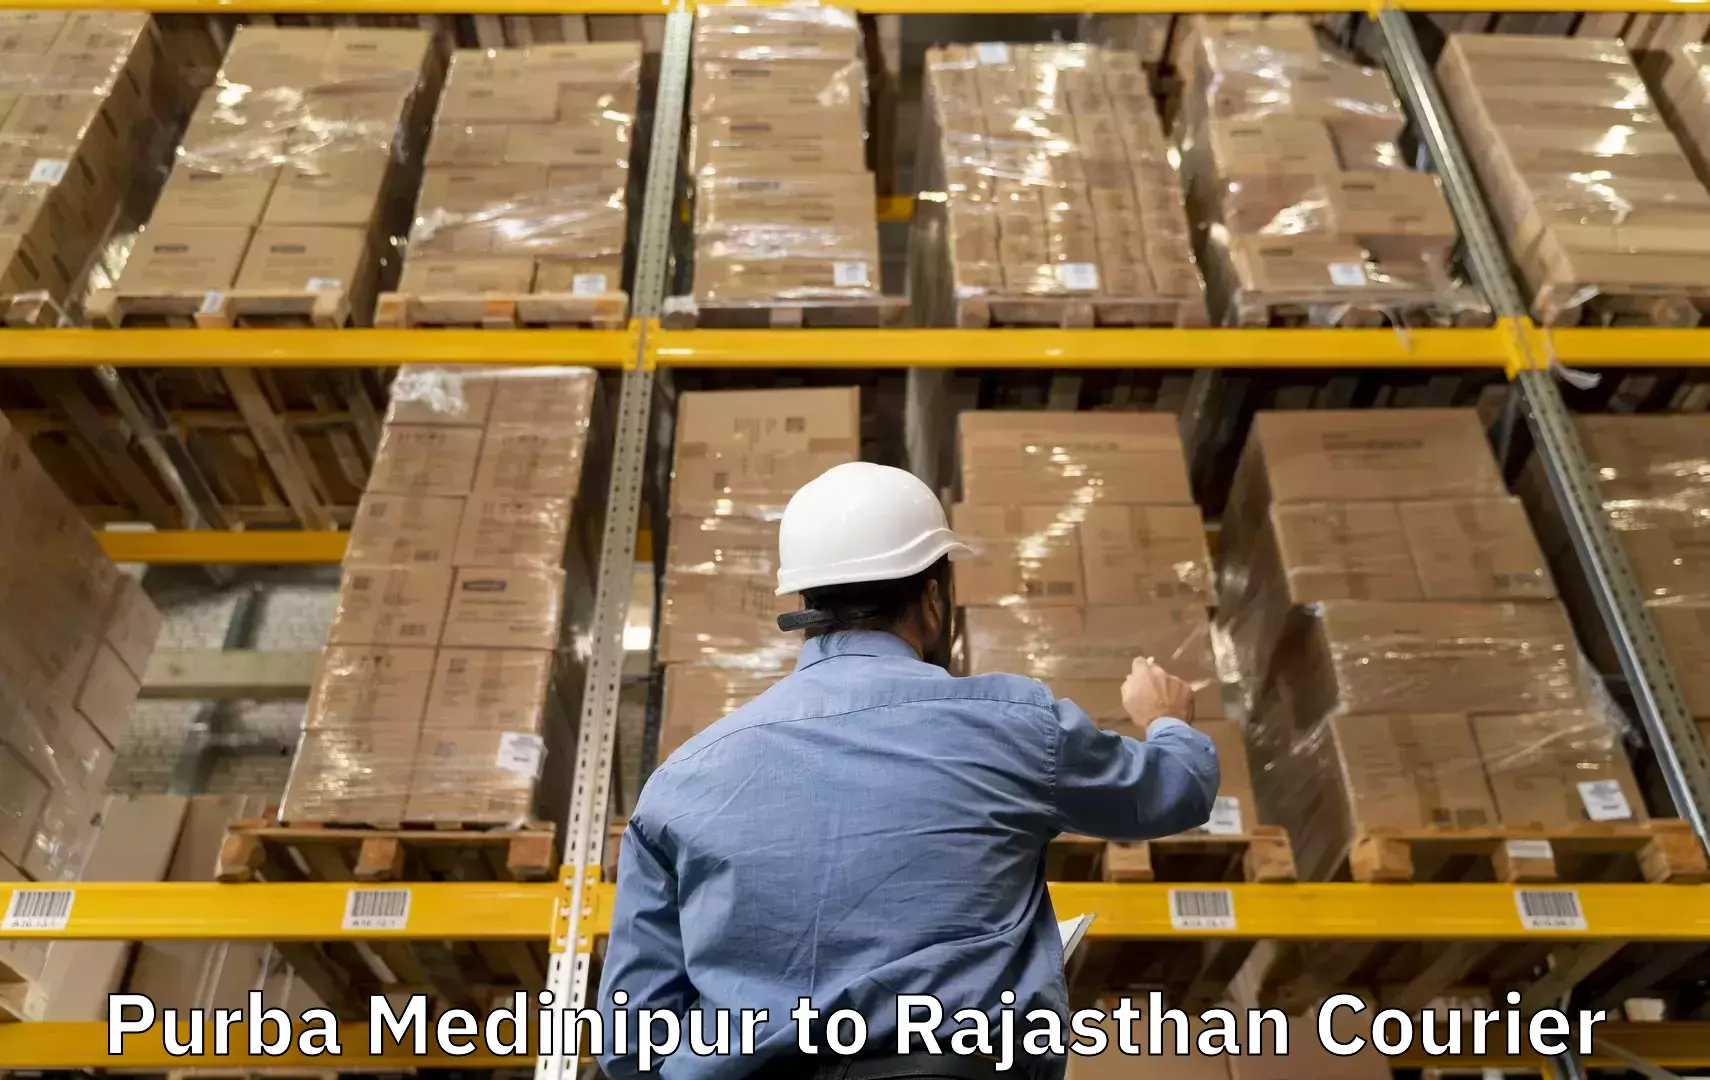 Customized luggage delivery Purba Medinipur to Gangapur Bhilwara